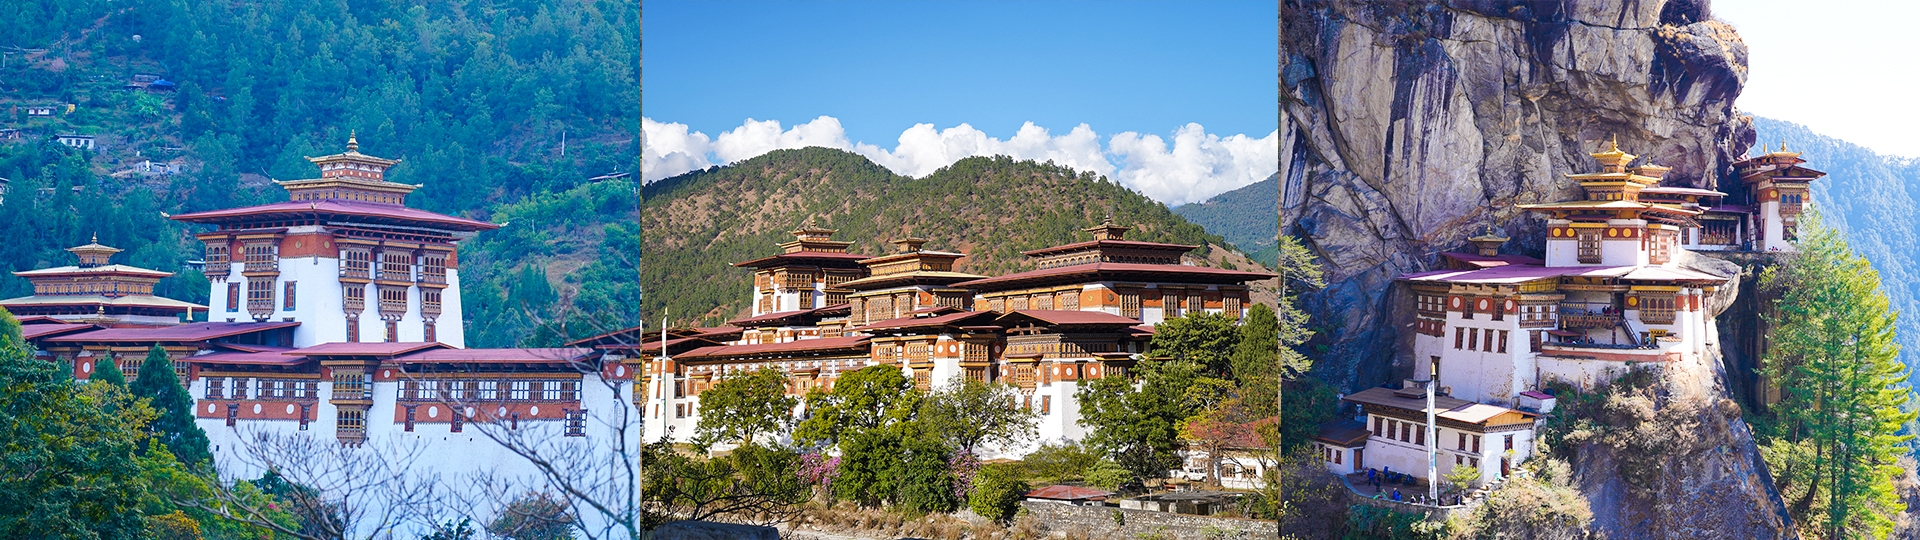 Popular Tourist Attractions in Bhutan